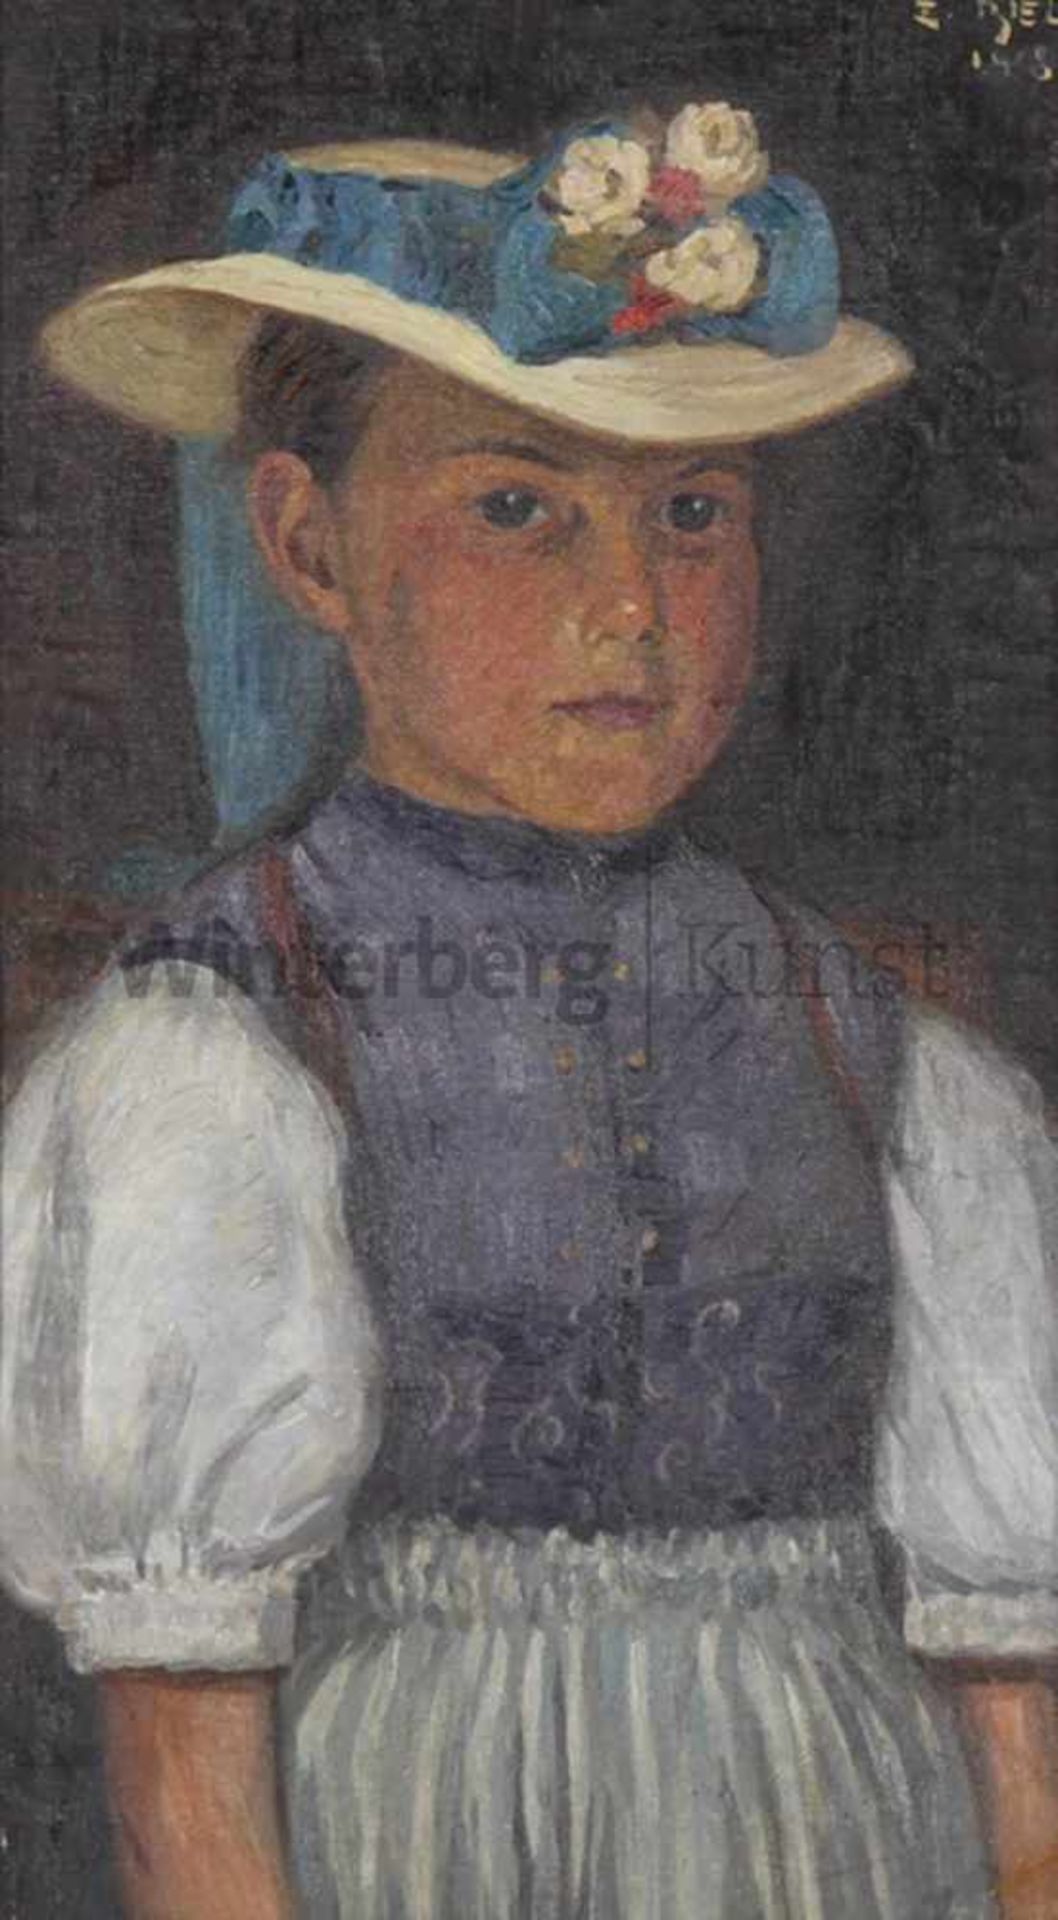 ERNEST BIELER - zugeschrieben Rolle (Vaud) 1863 - 1948 LausanneJunges Mädchen in Tracht. Tempera auf